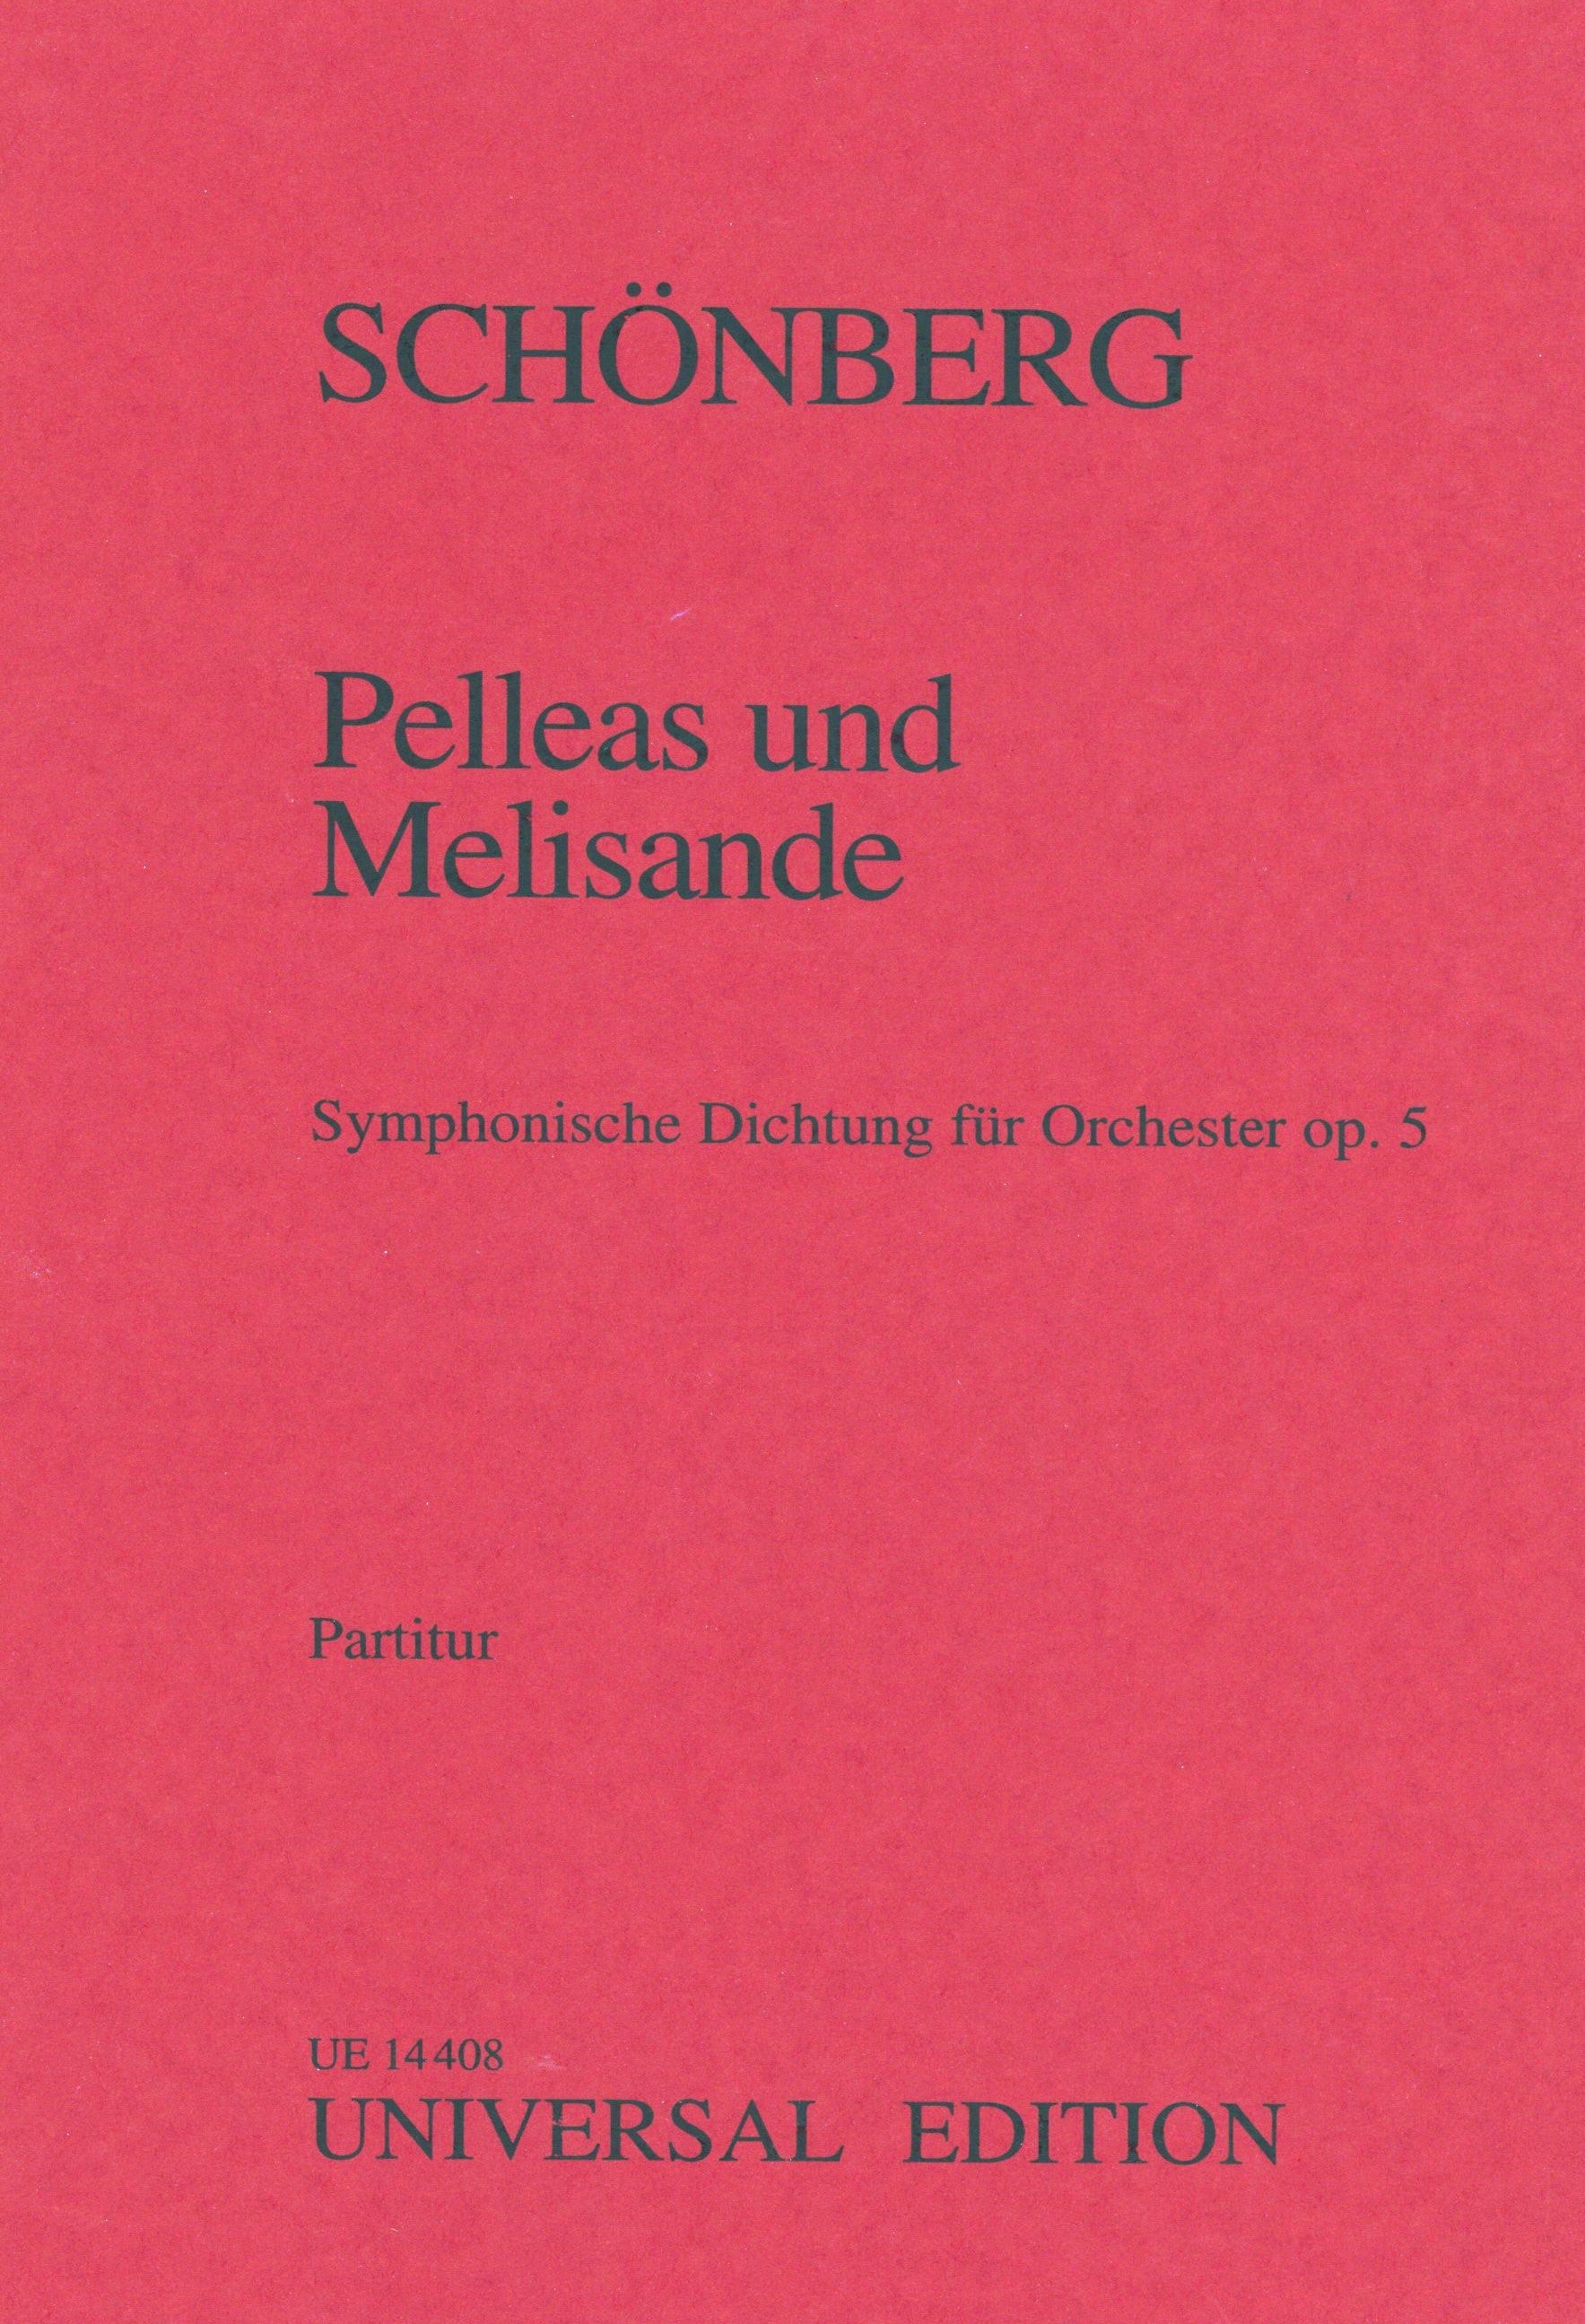 Schoenberg: Pelleas and Melisande, Op. 5